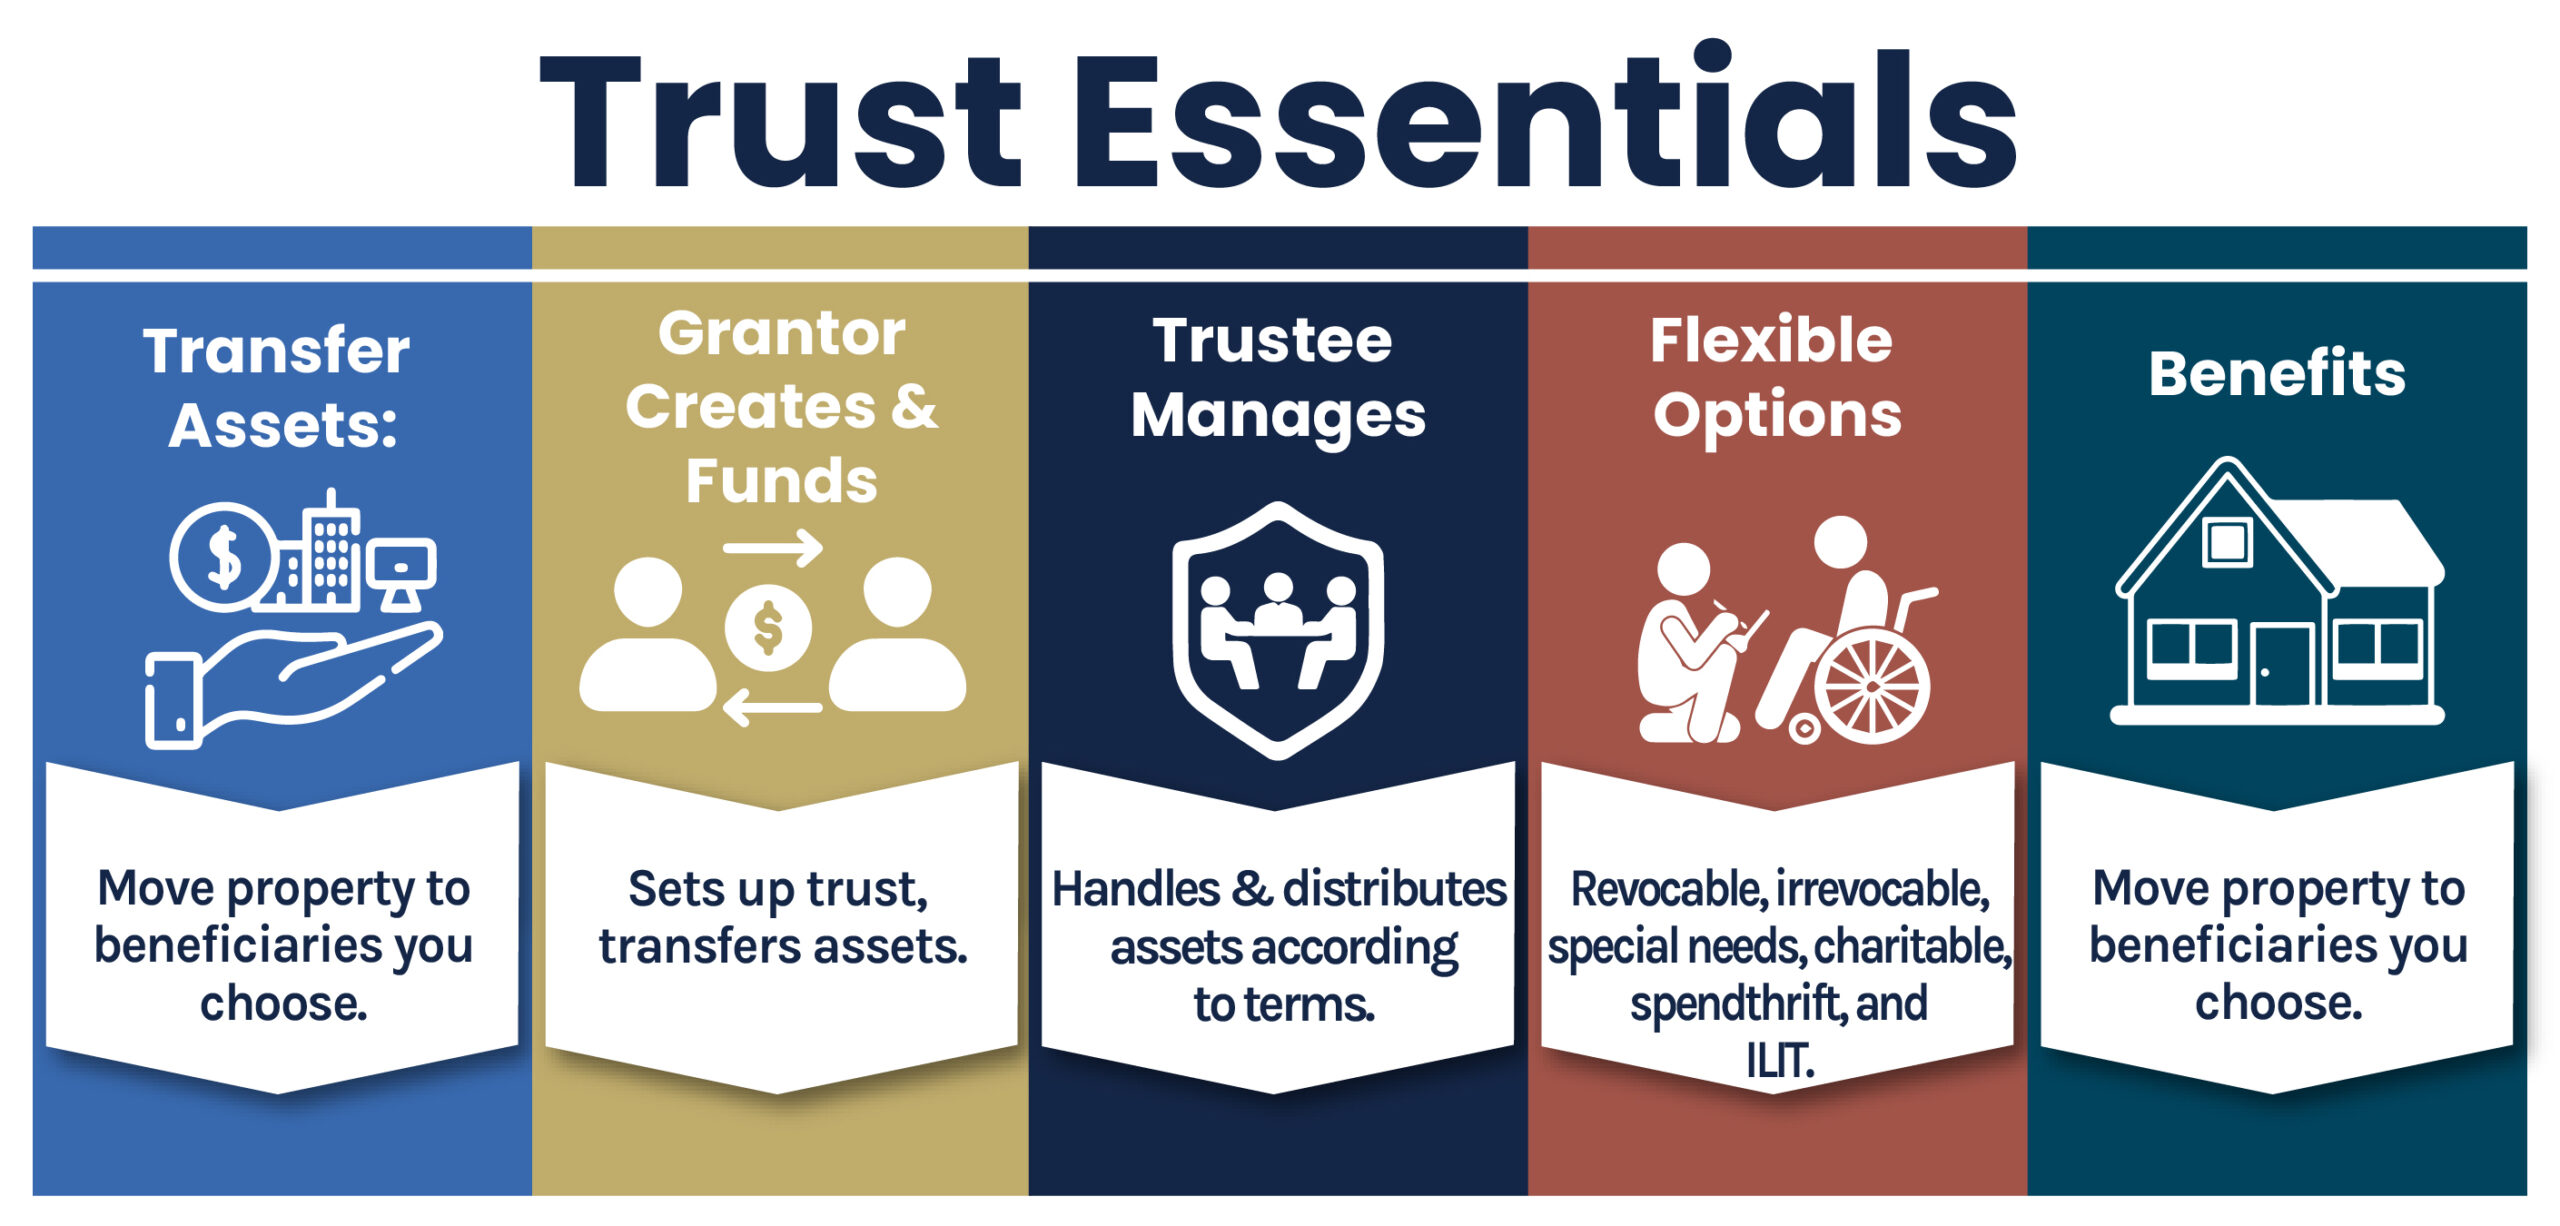 Trust Essentials